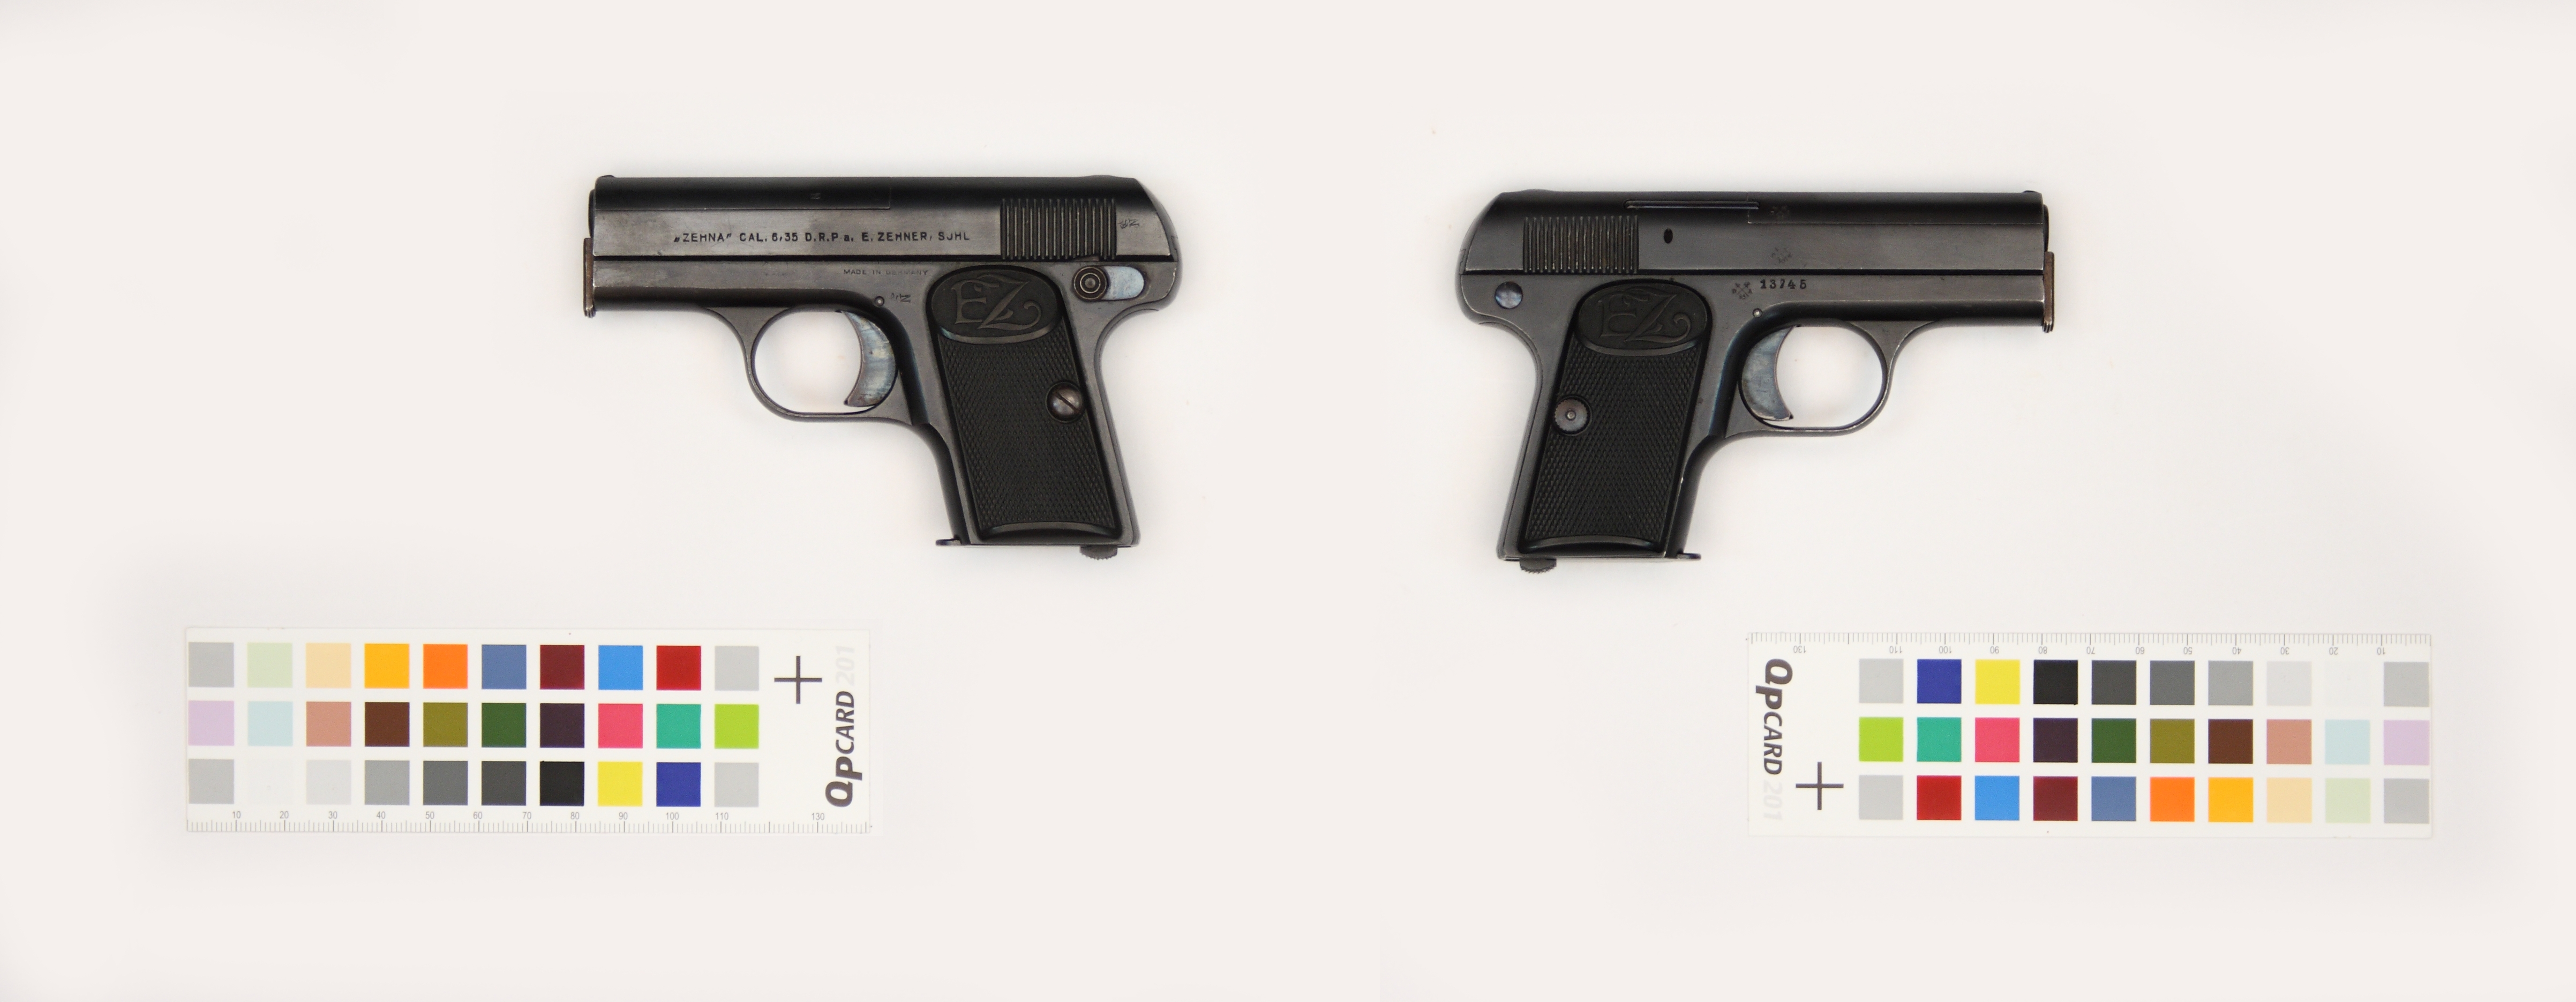 Zehna Type II pocket pistol